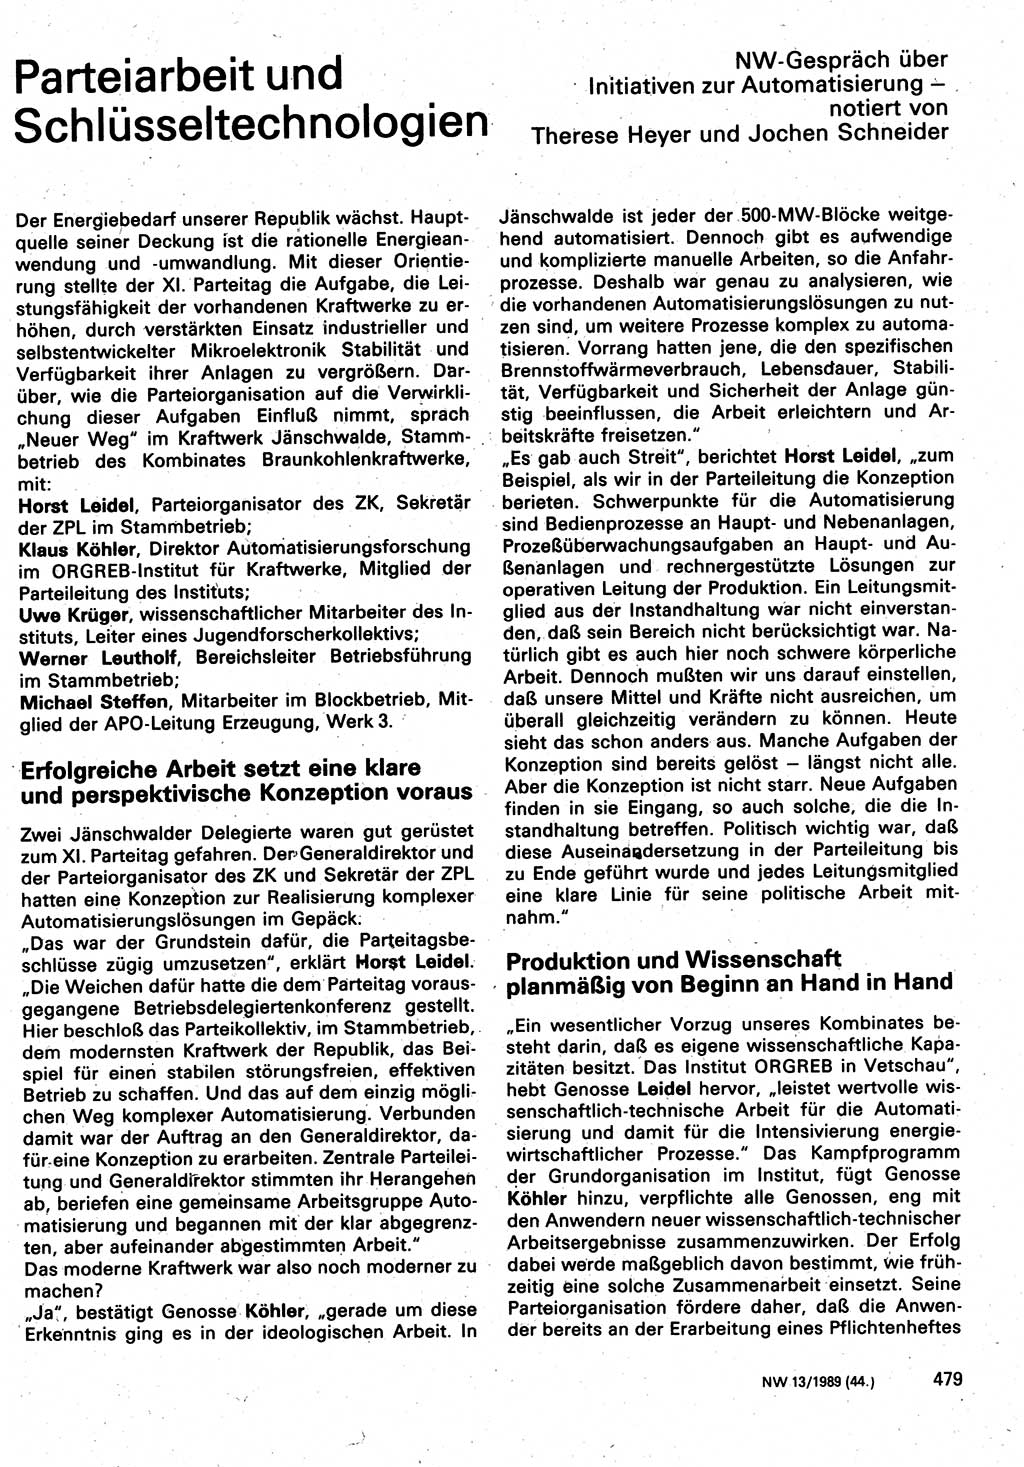 Neuer Weg (NW), Organ des Zentralkomitees (ZK) der SED (Sozialistische Einheitspartei Deutschlands) für Fragen des Parteilebens, 44. Jahrgang [Deutsche Demokratische Republik (DDR)] 1989, Seite 479 (NW ZK SED DDR 1989, S. 479)